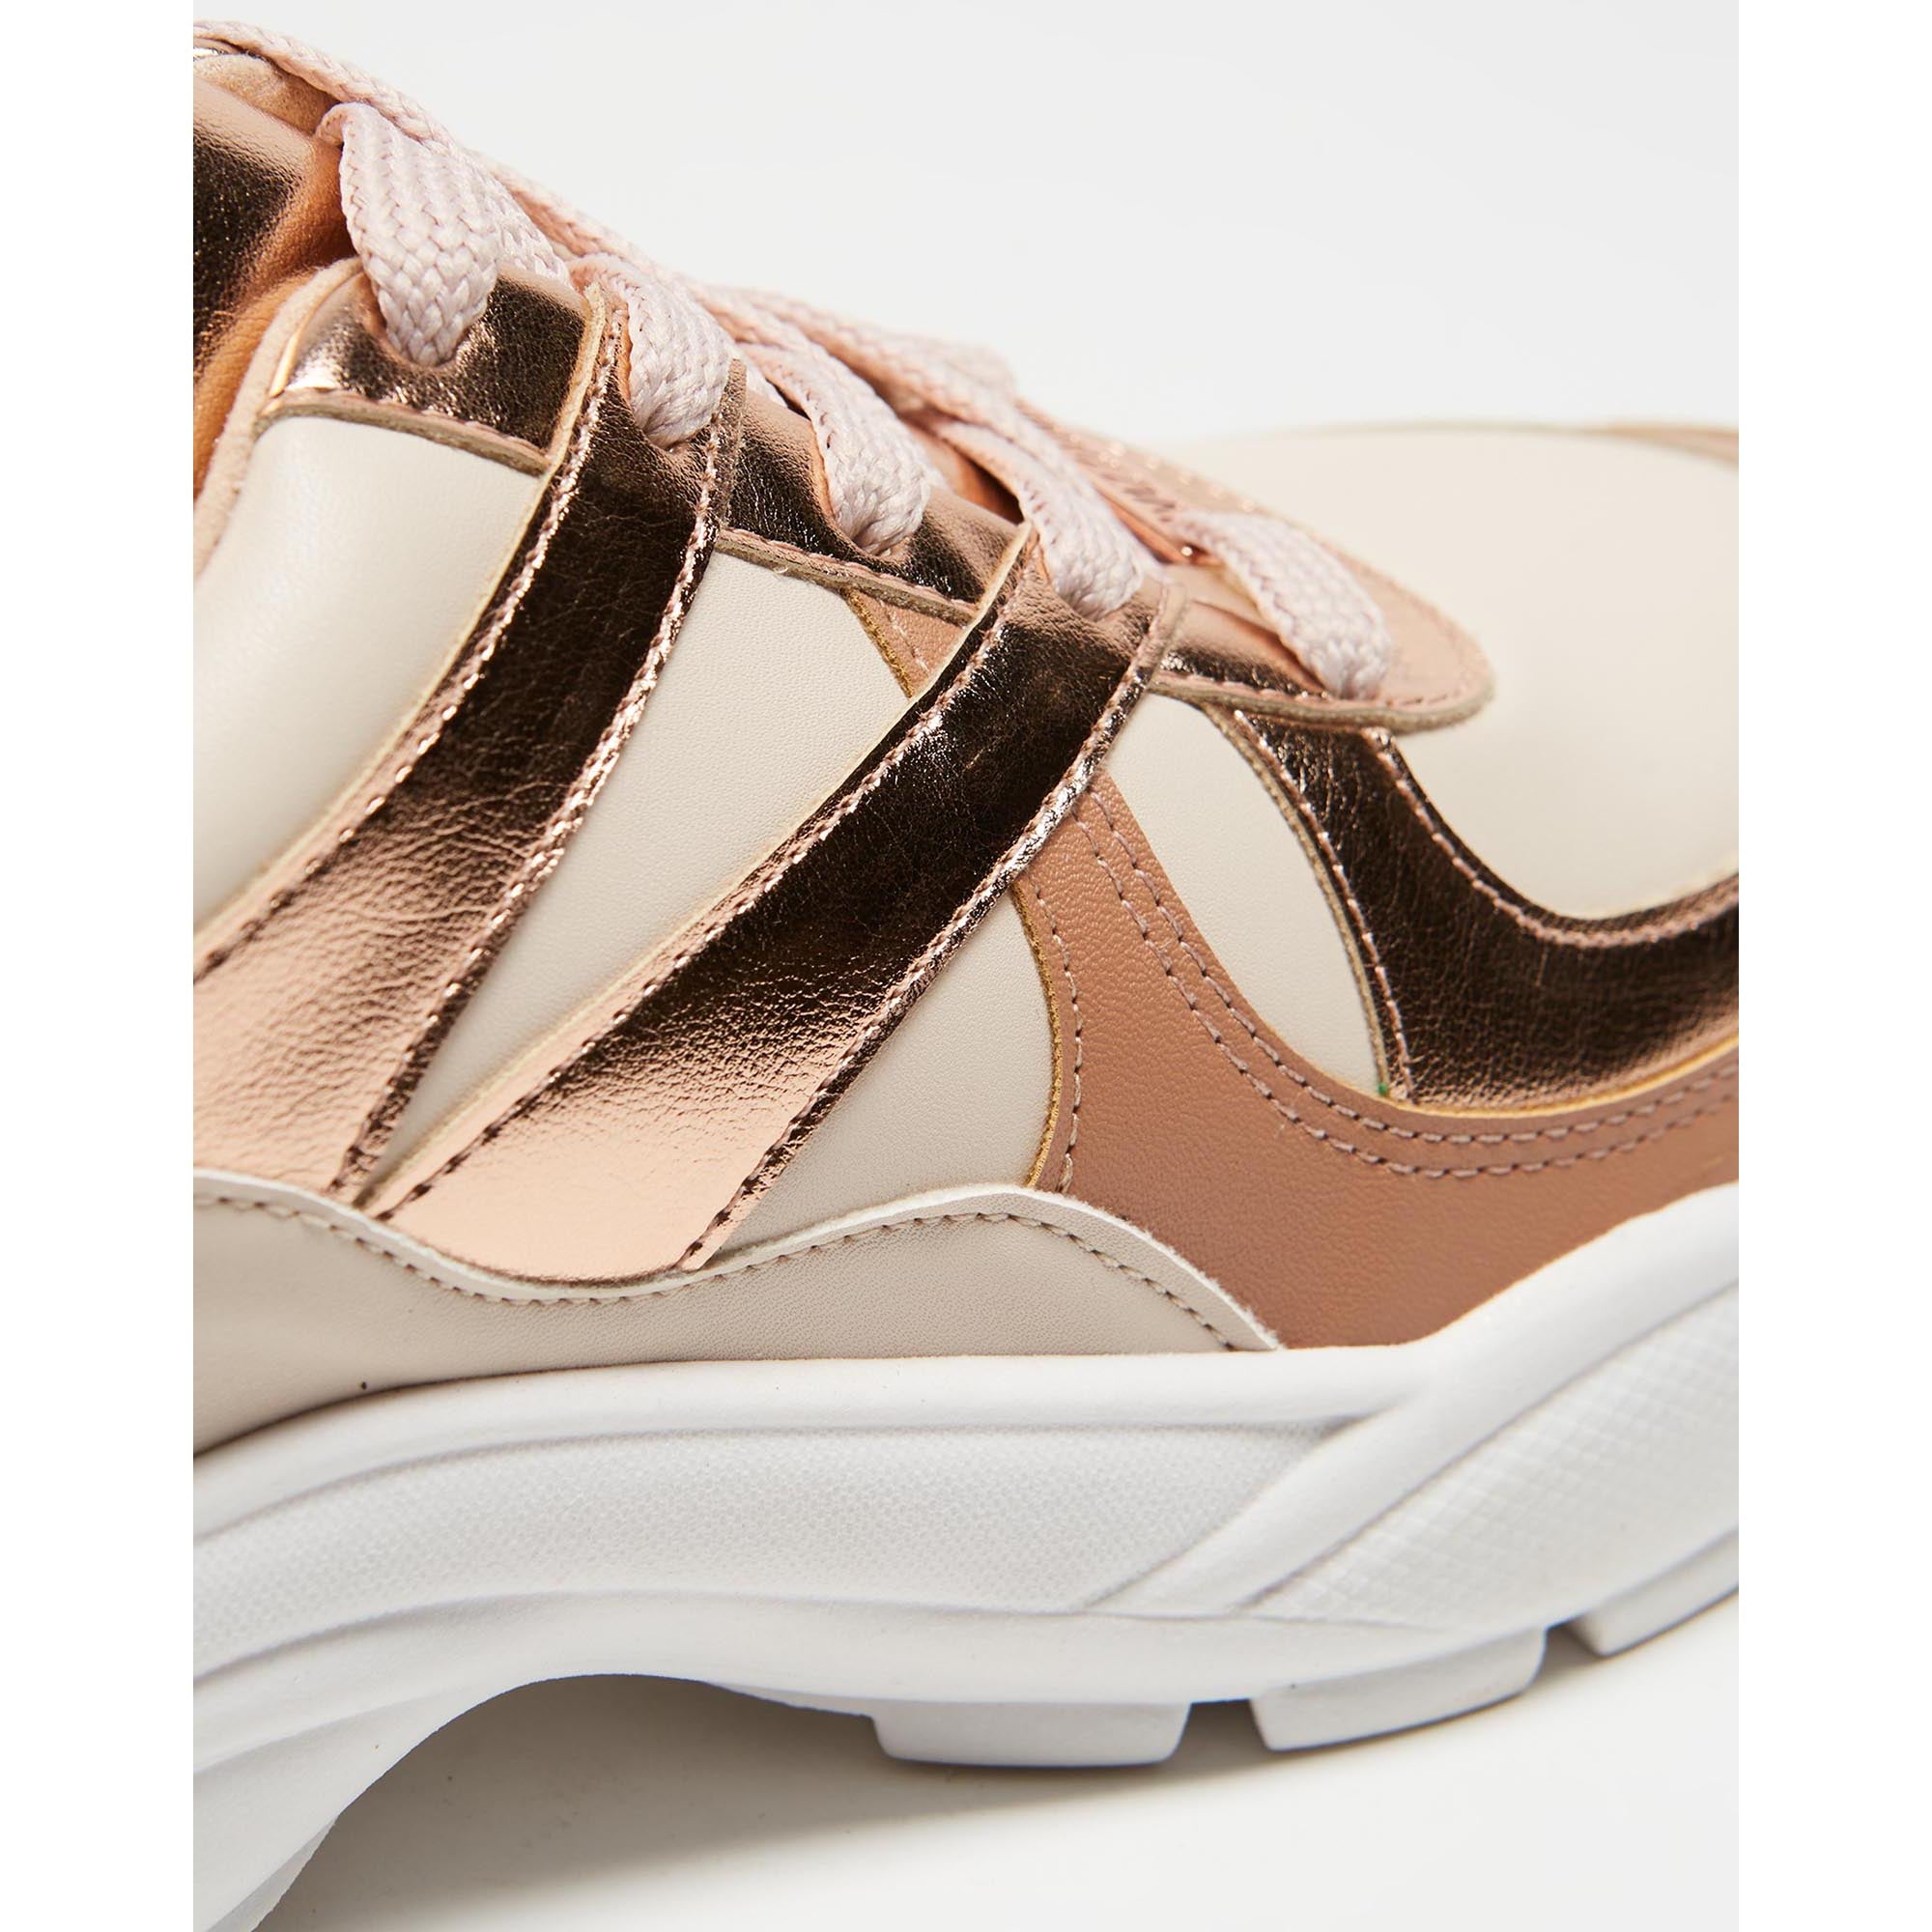 Vizzano 1331-108 Chunky Sole Sneaker in Cream/Gold Pink